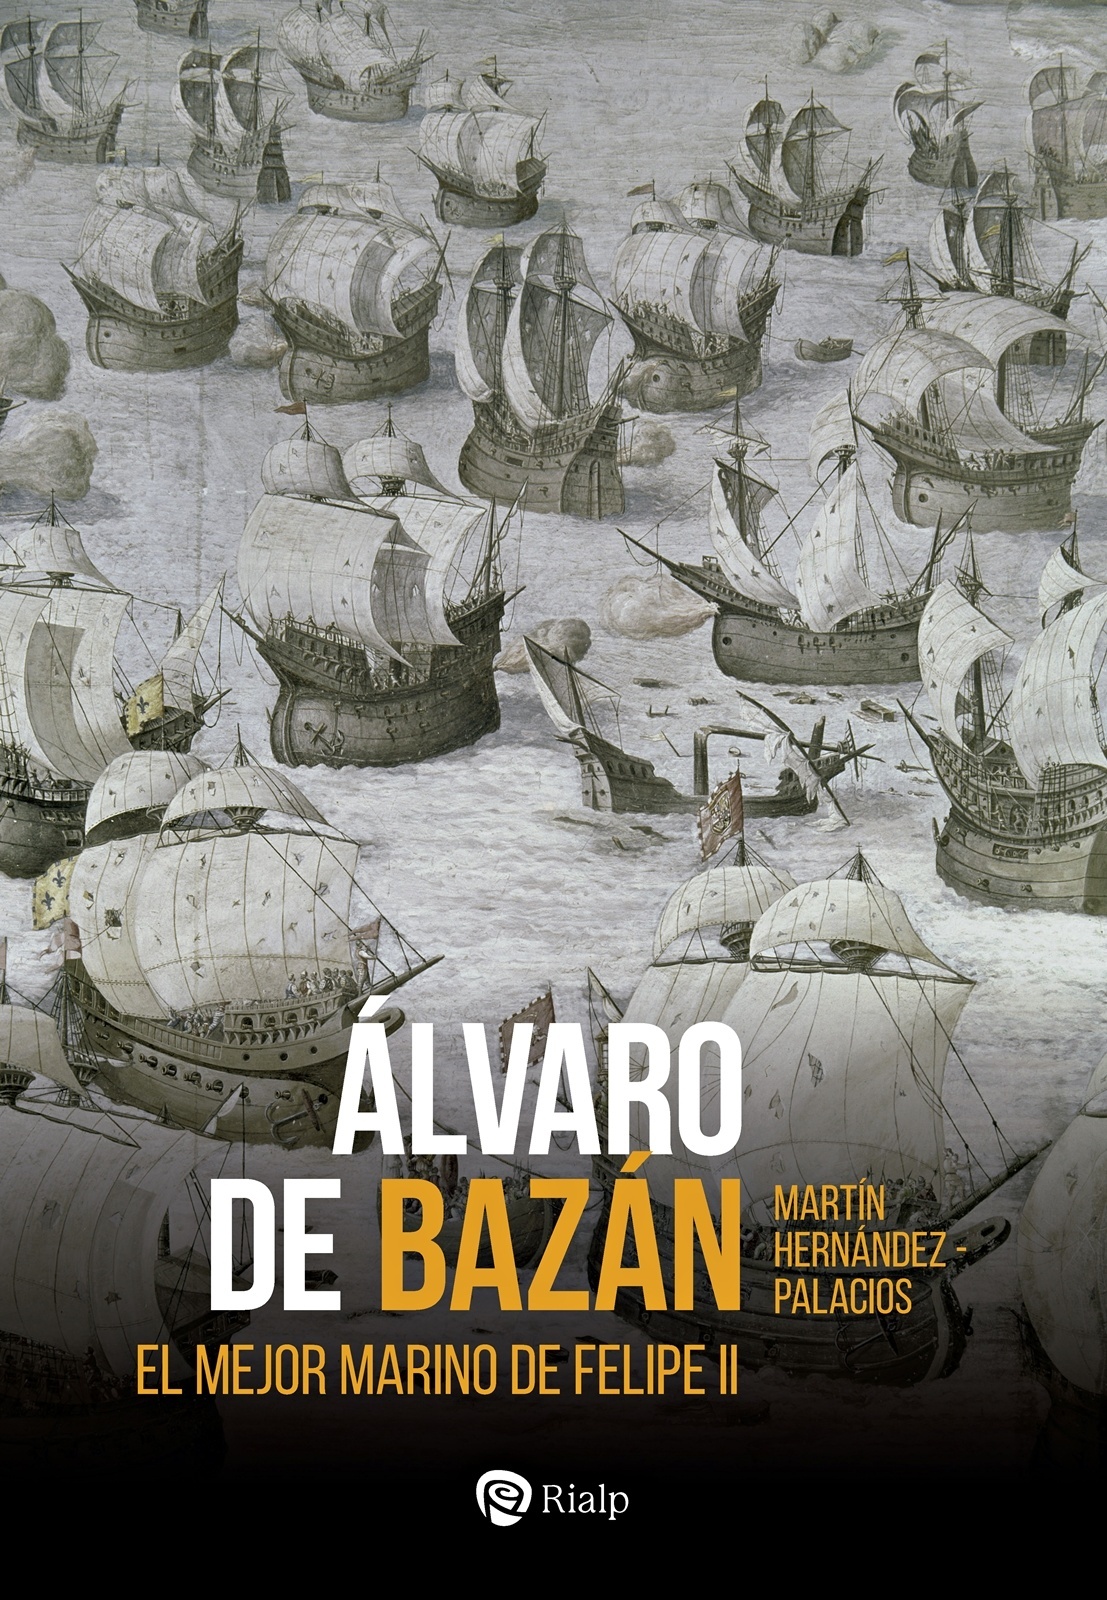 Álvaro de Bazán "El mejor marino de Felipe II"